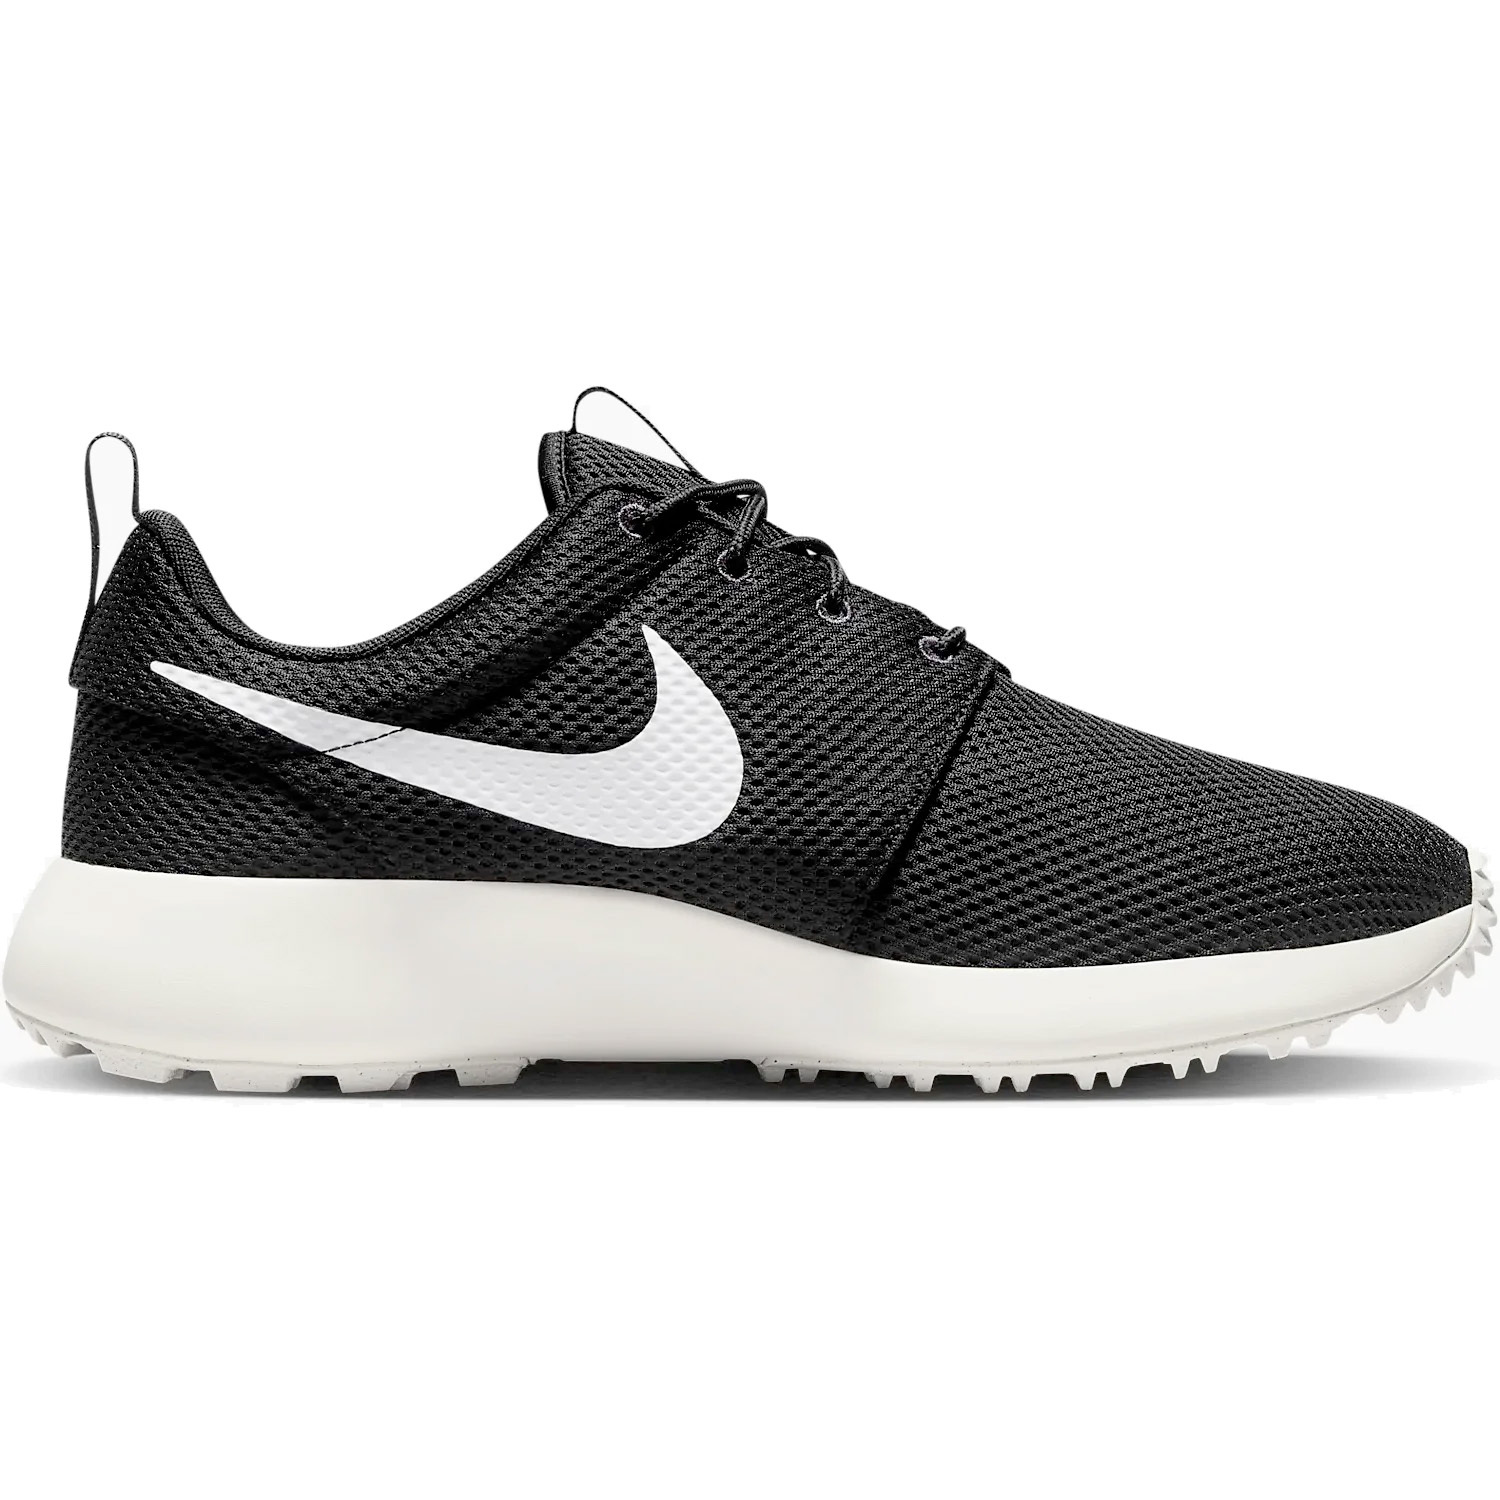 Nike Roshe G Next Nature Golf Shoes – Black/White/Anthracite/Sail